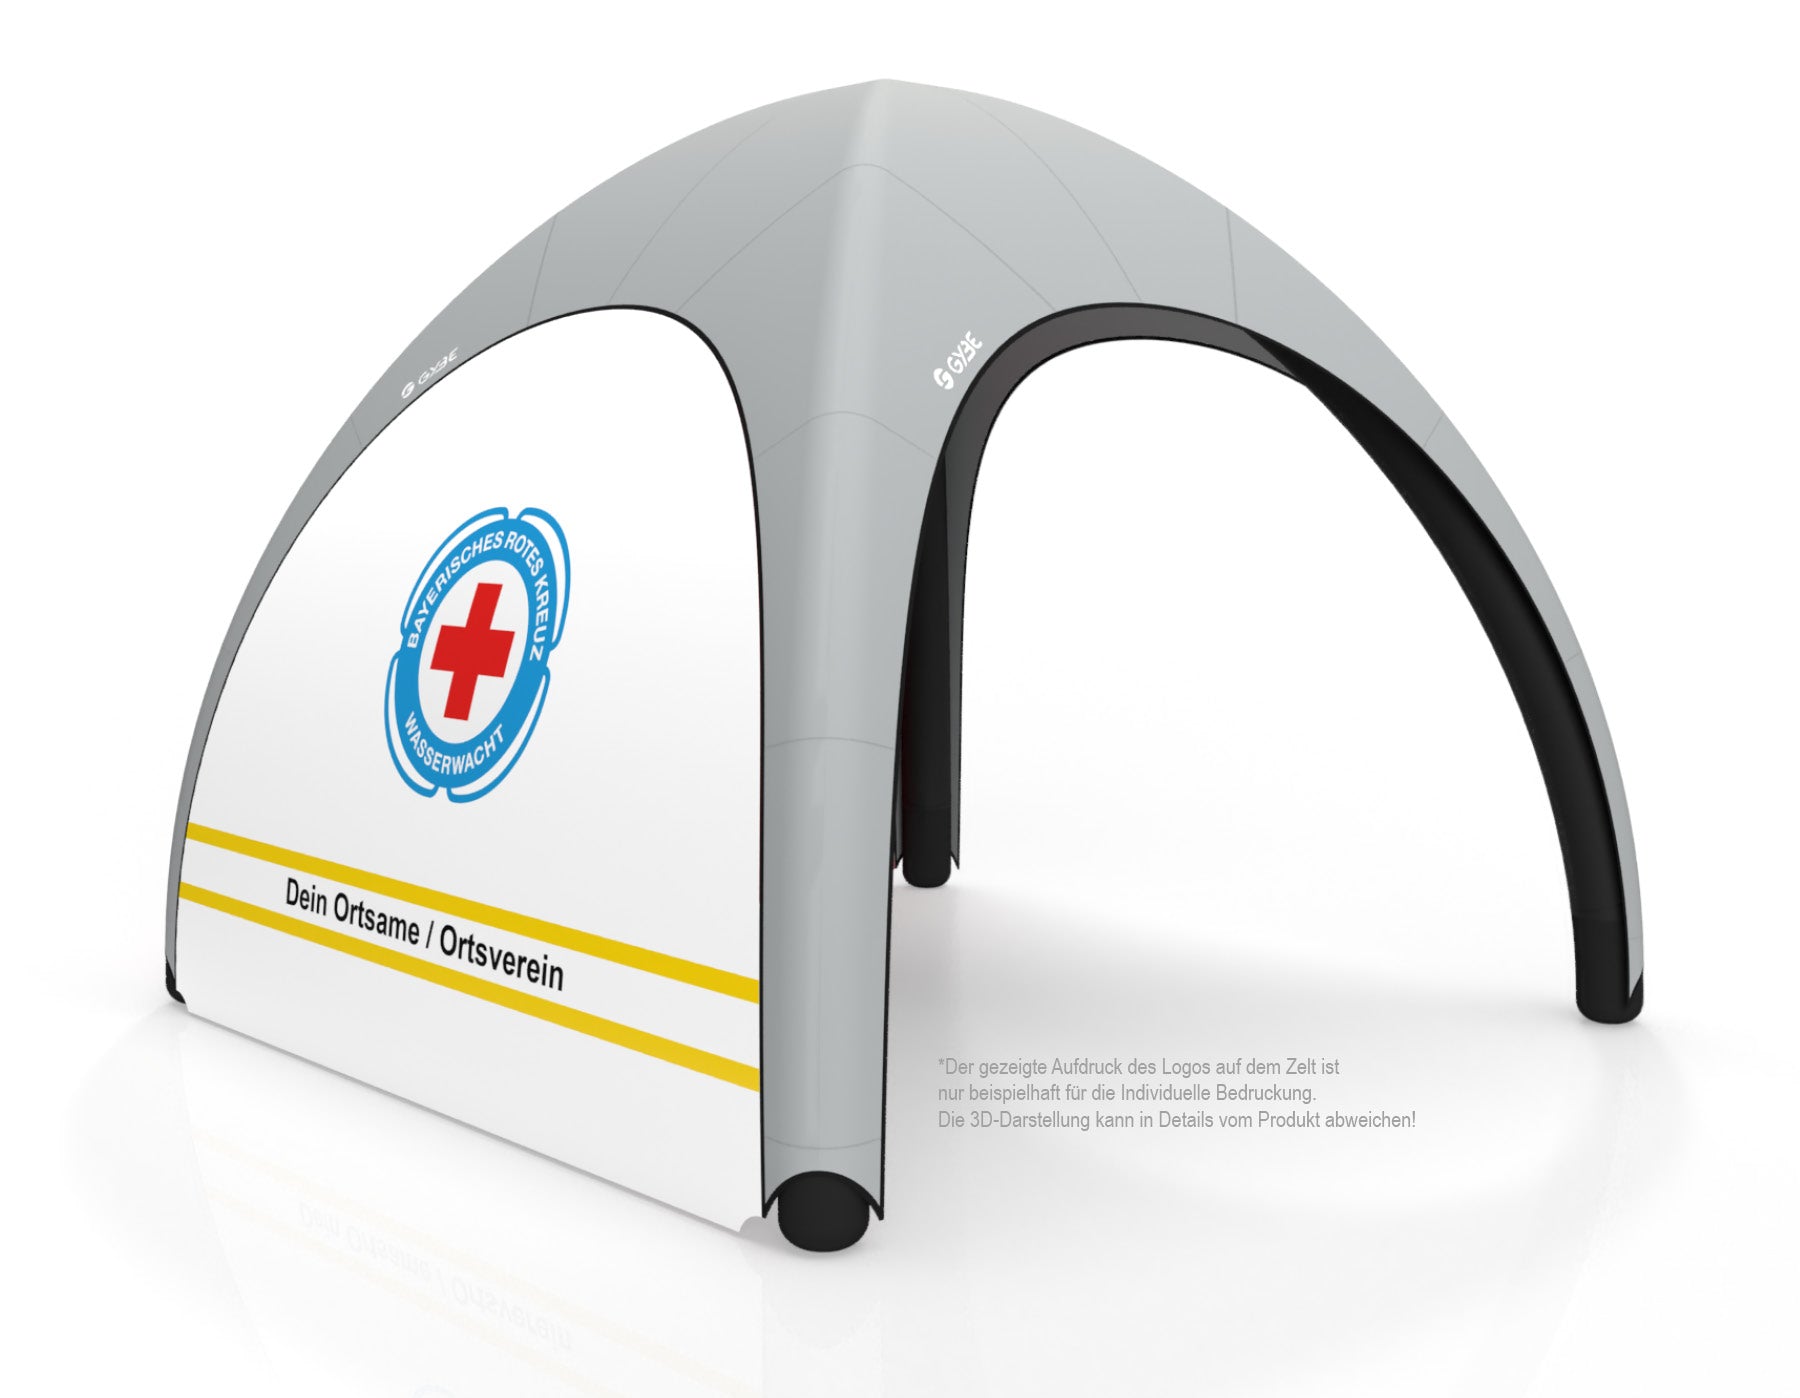 Aufblasbares Schnelleinsatzzelt Gybe Humanity Tent mit BRK Wasserwacht Logo und Ortsnamen | Sanitätszelt | Einsatzzelt